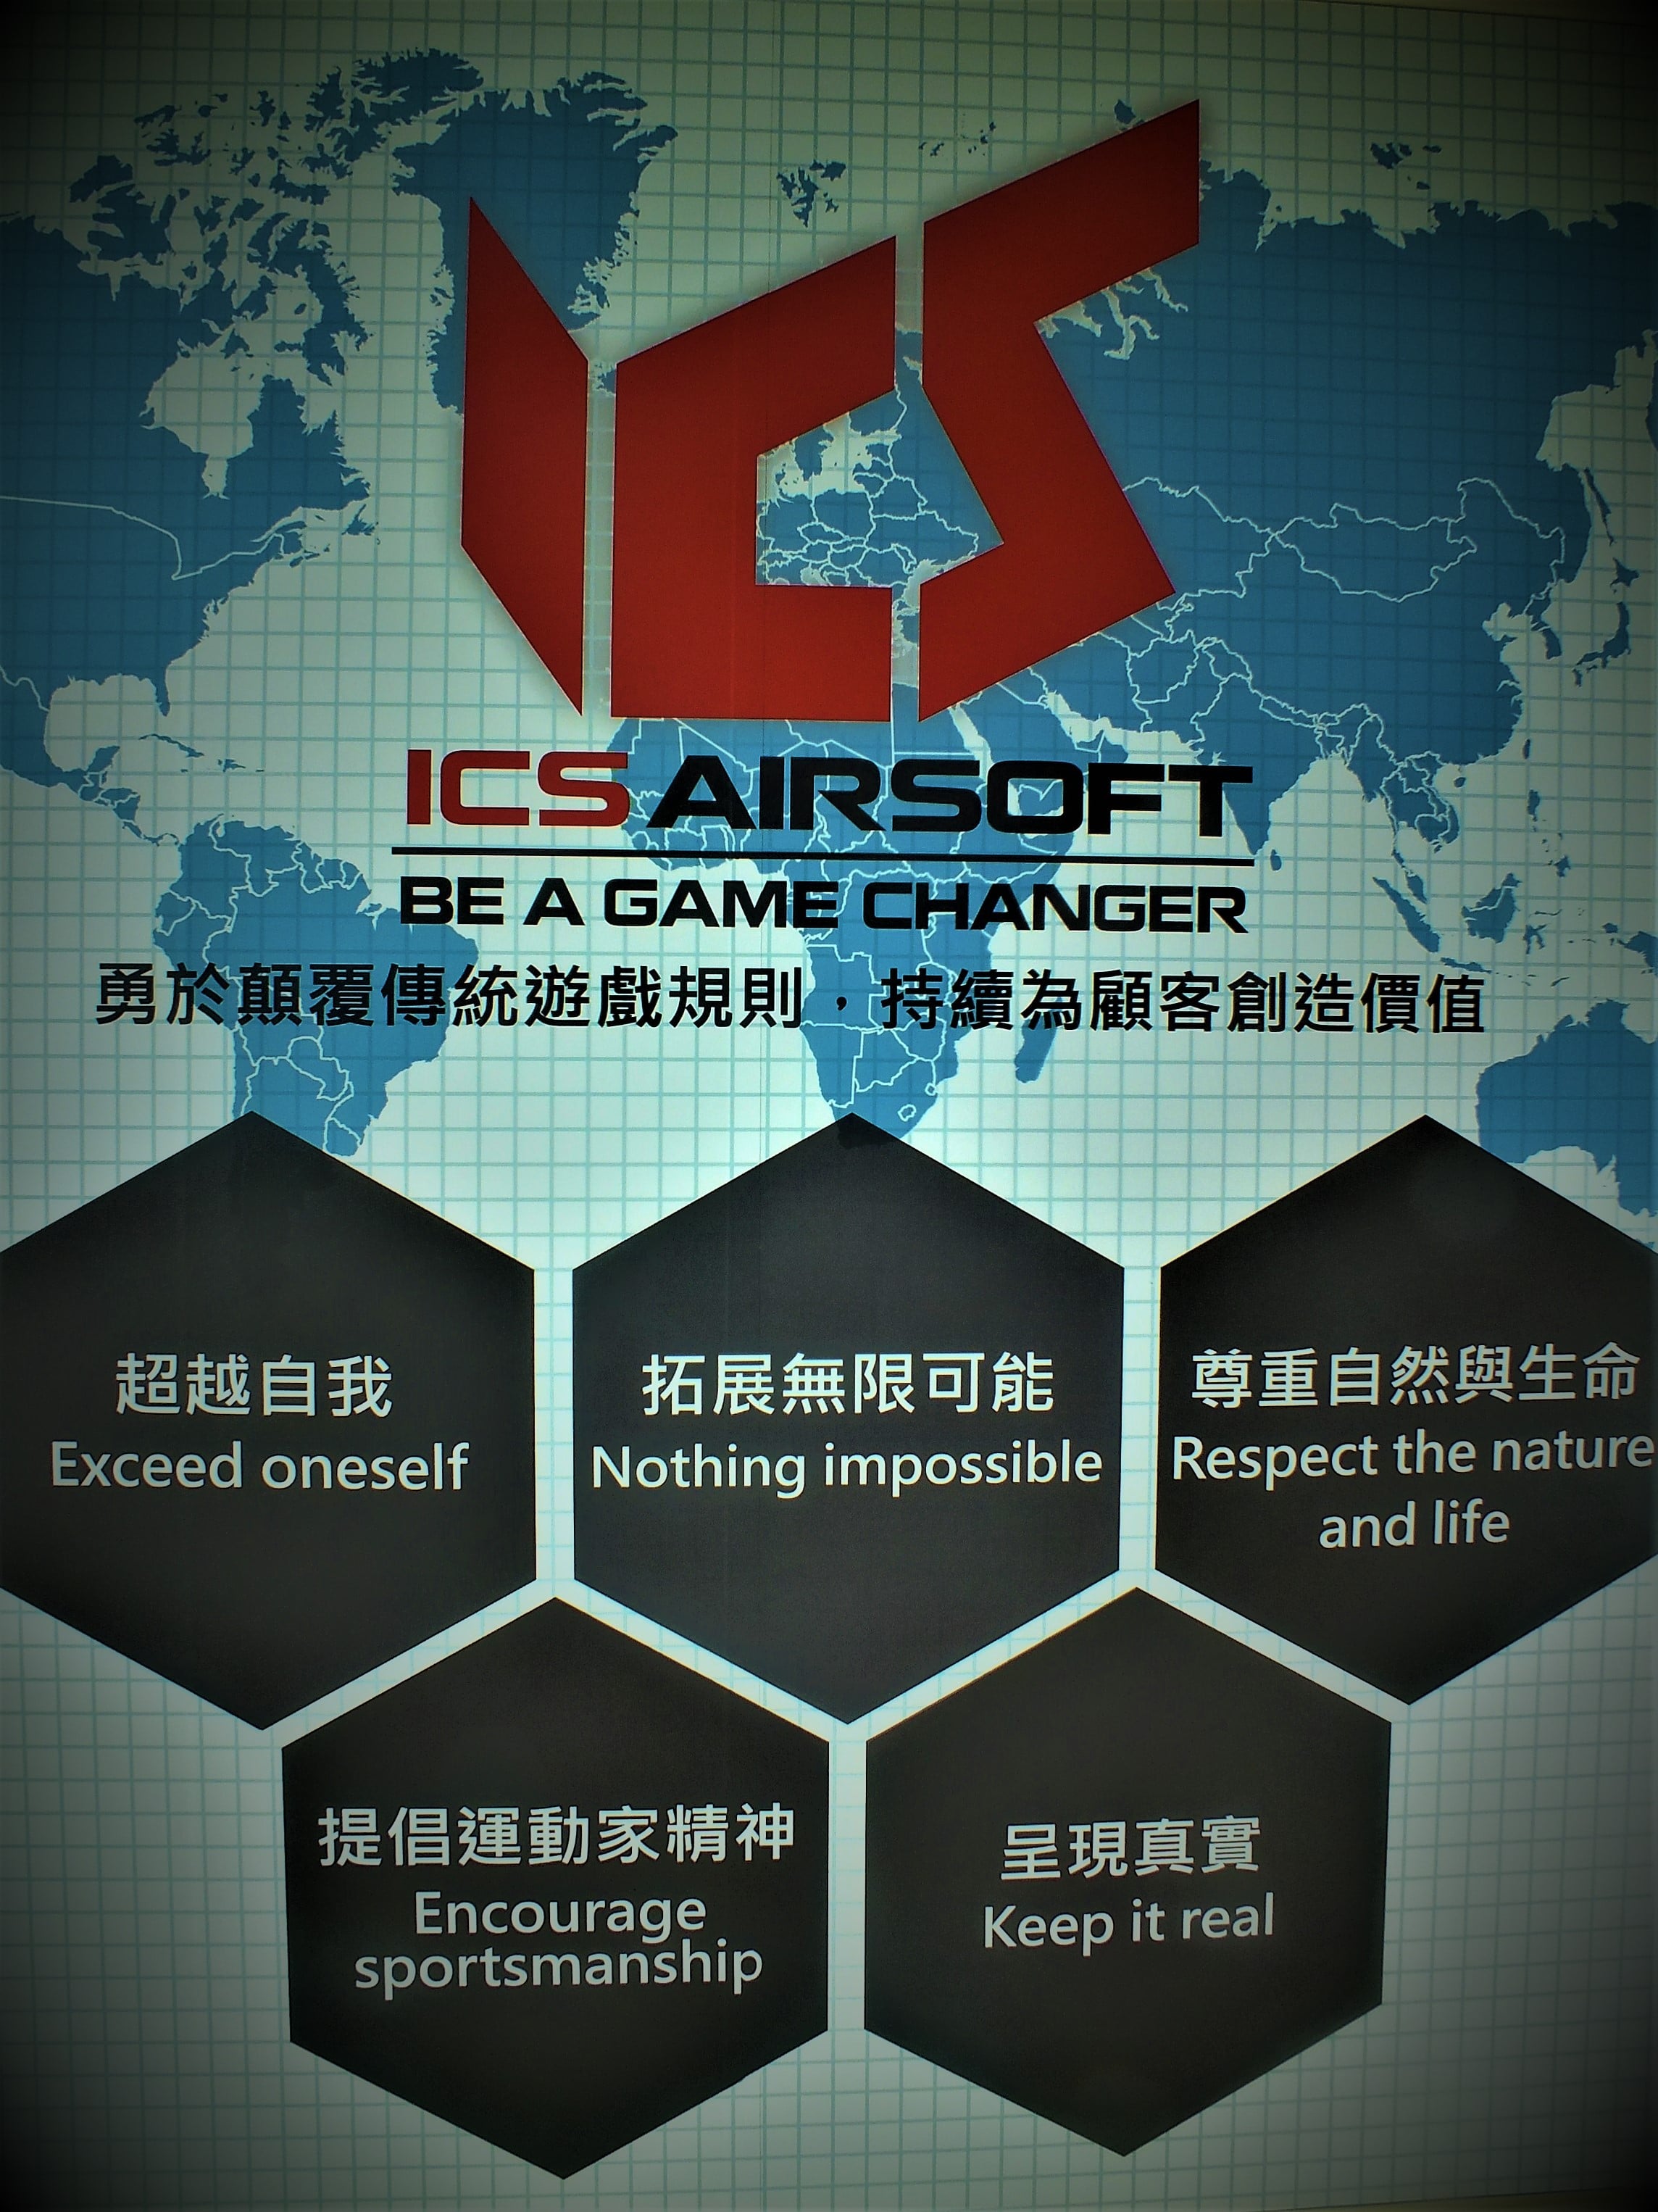 Visiting ICS Airsoft